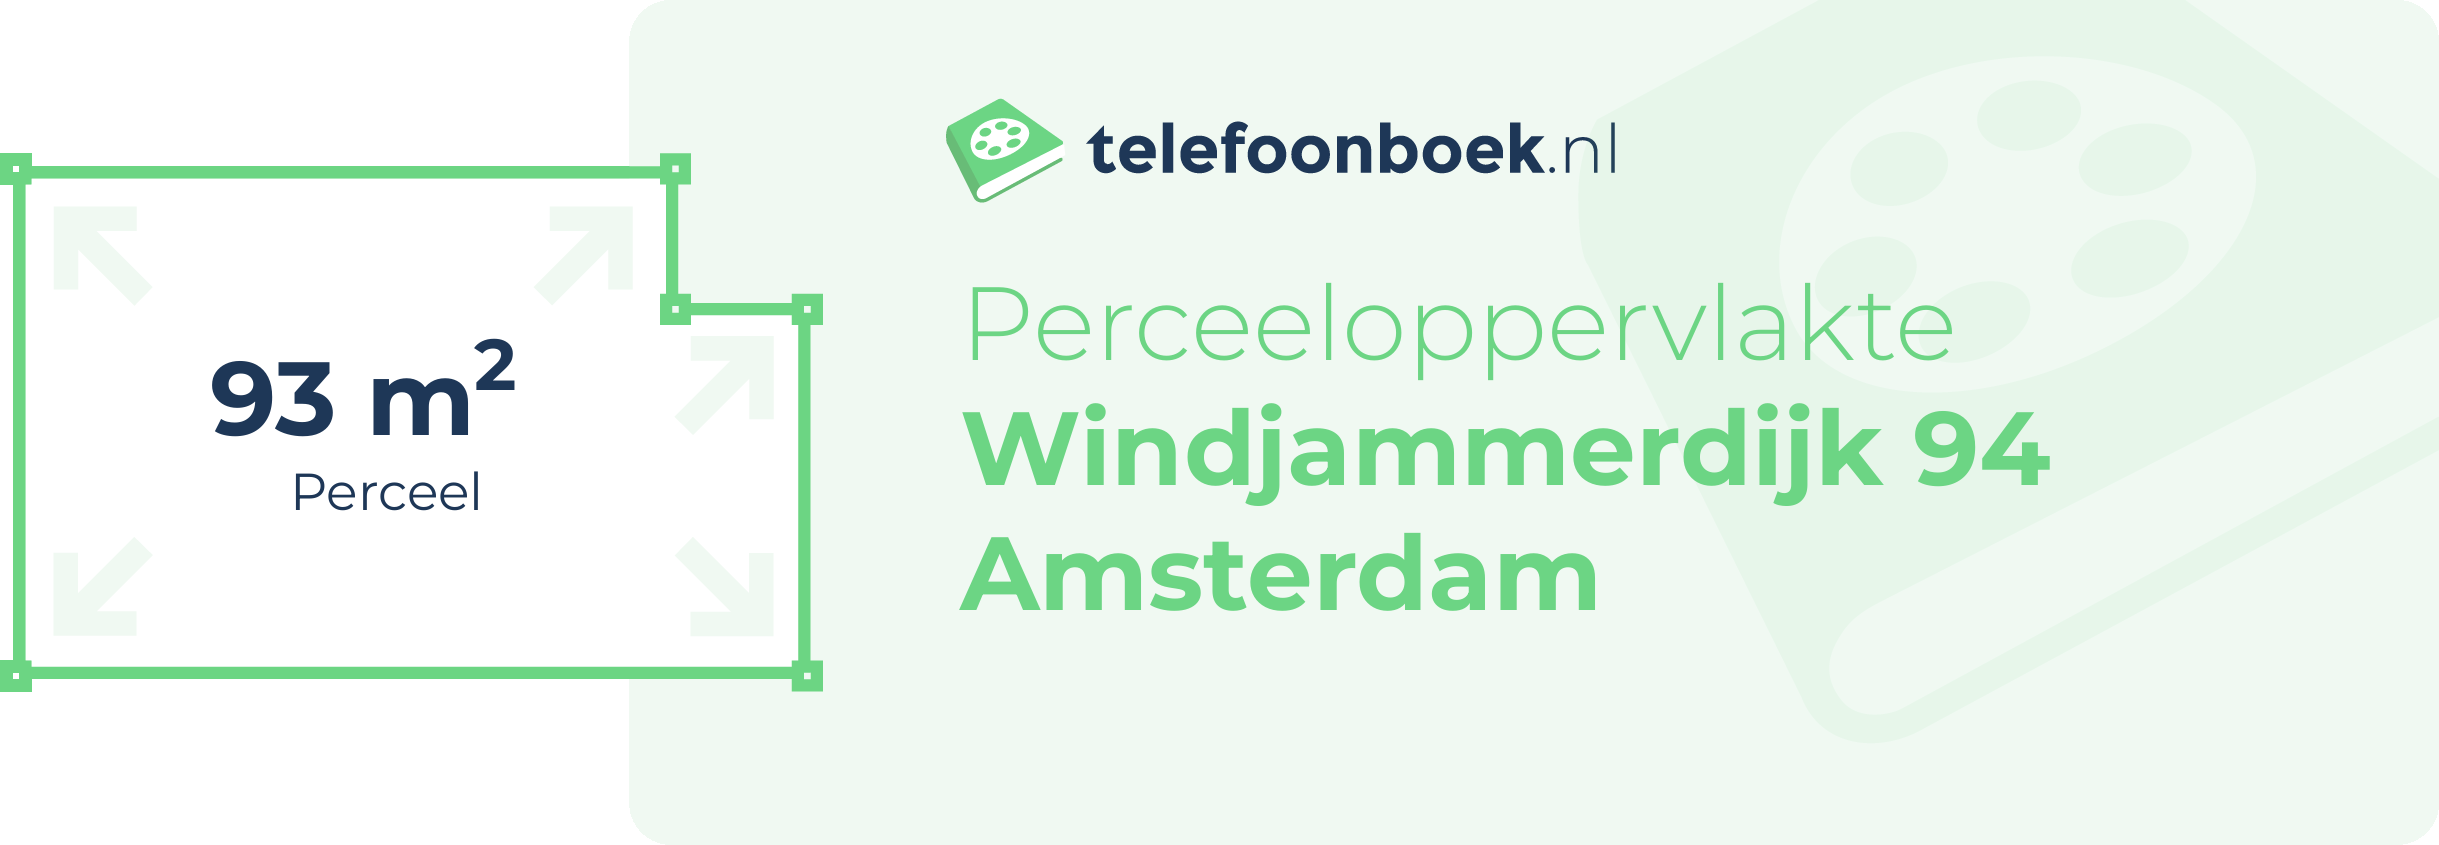 Perceeloppervlakte Windjammerdijk 94 Amsterdam